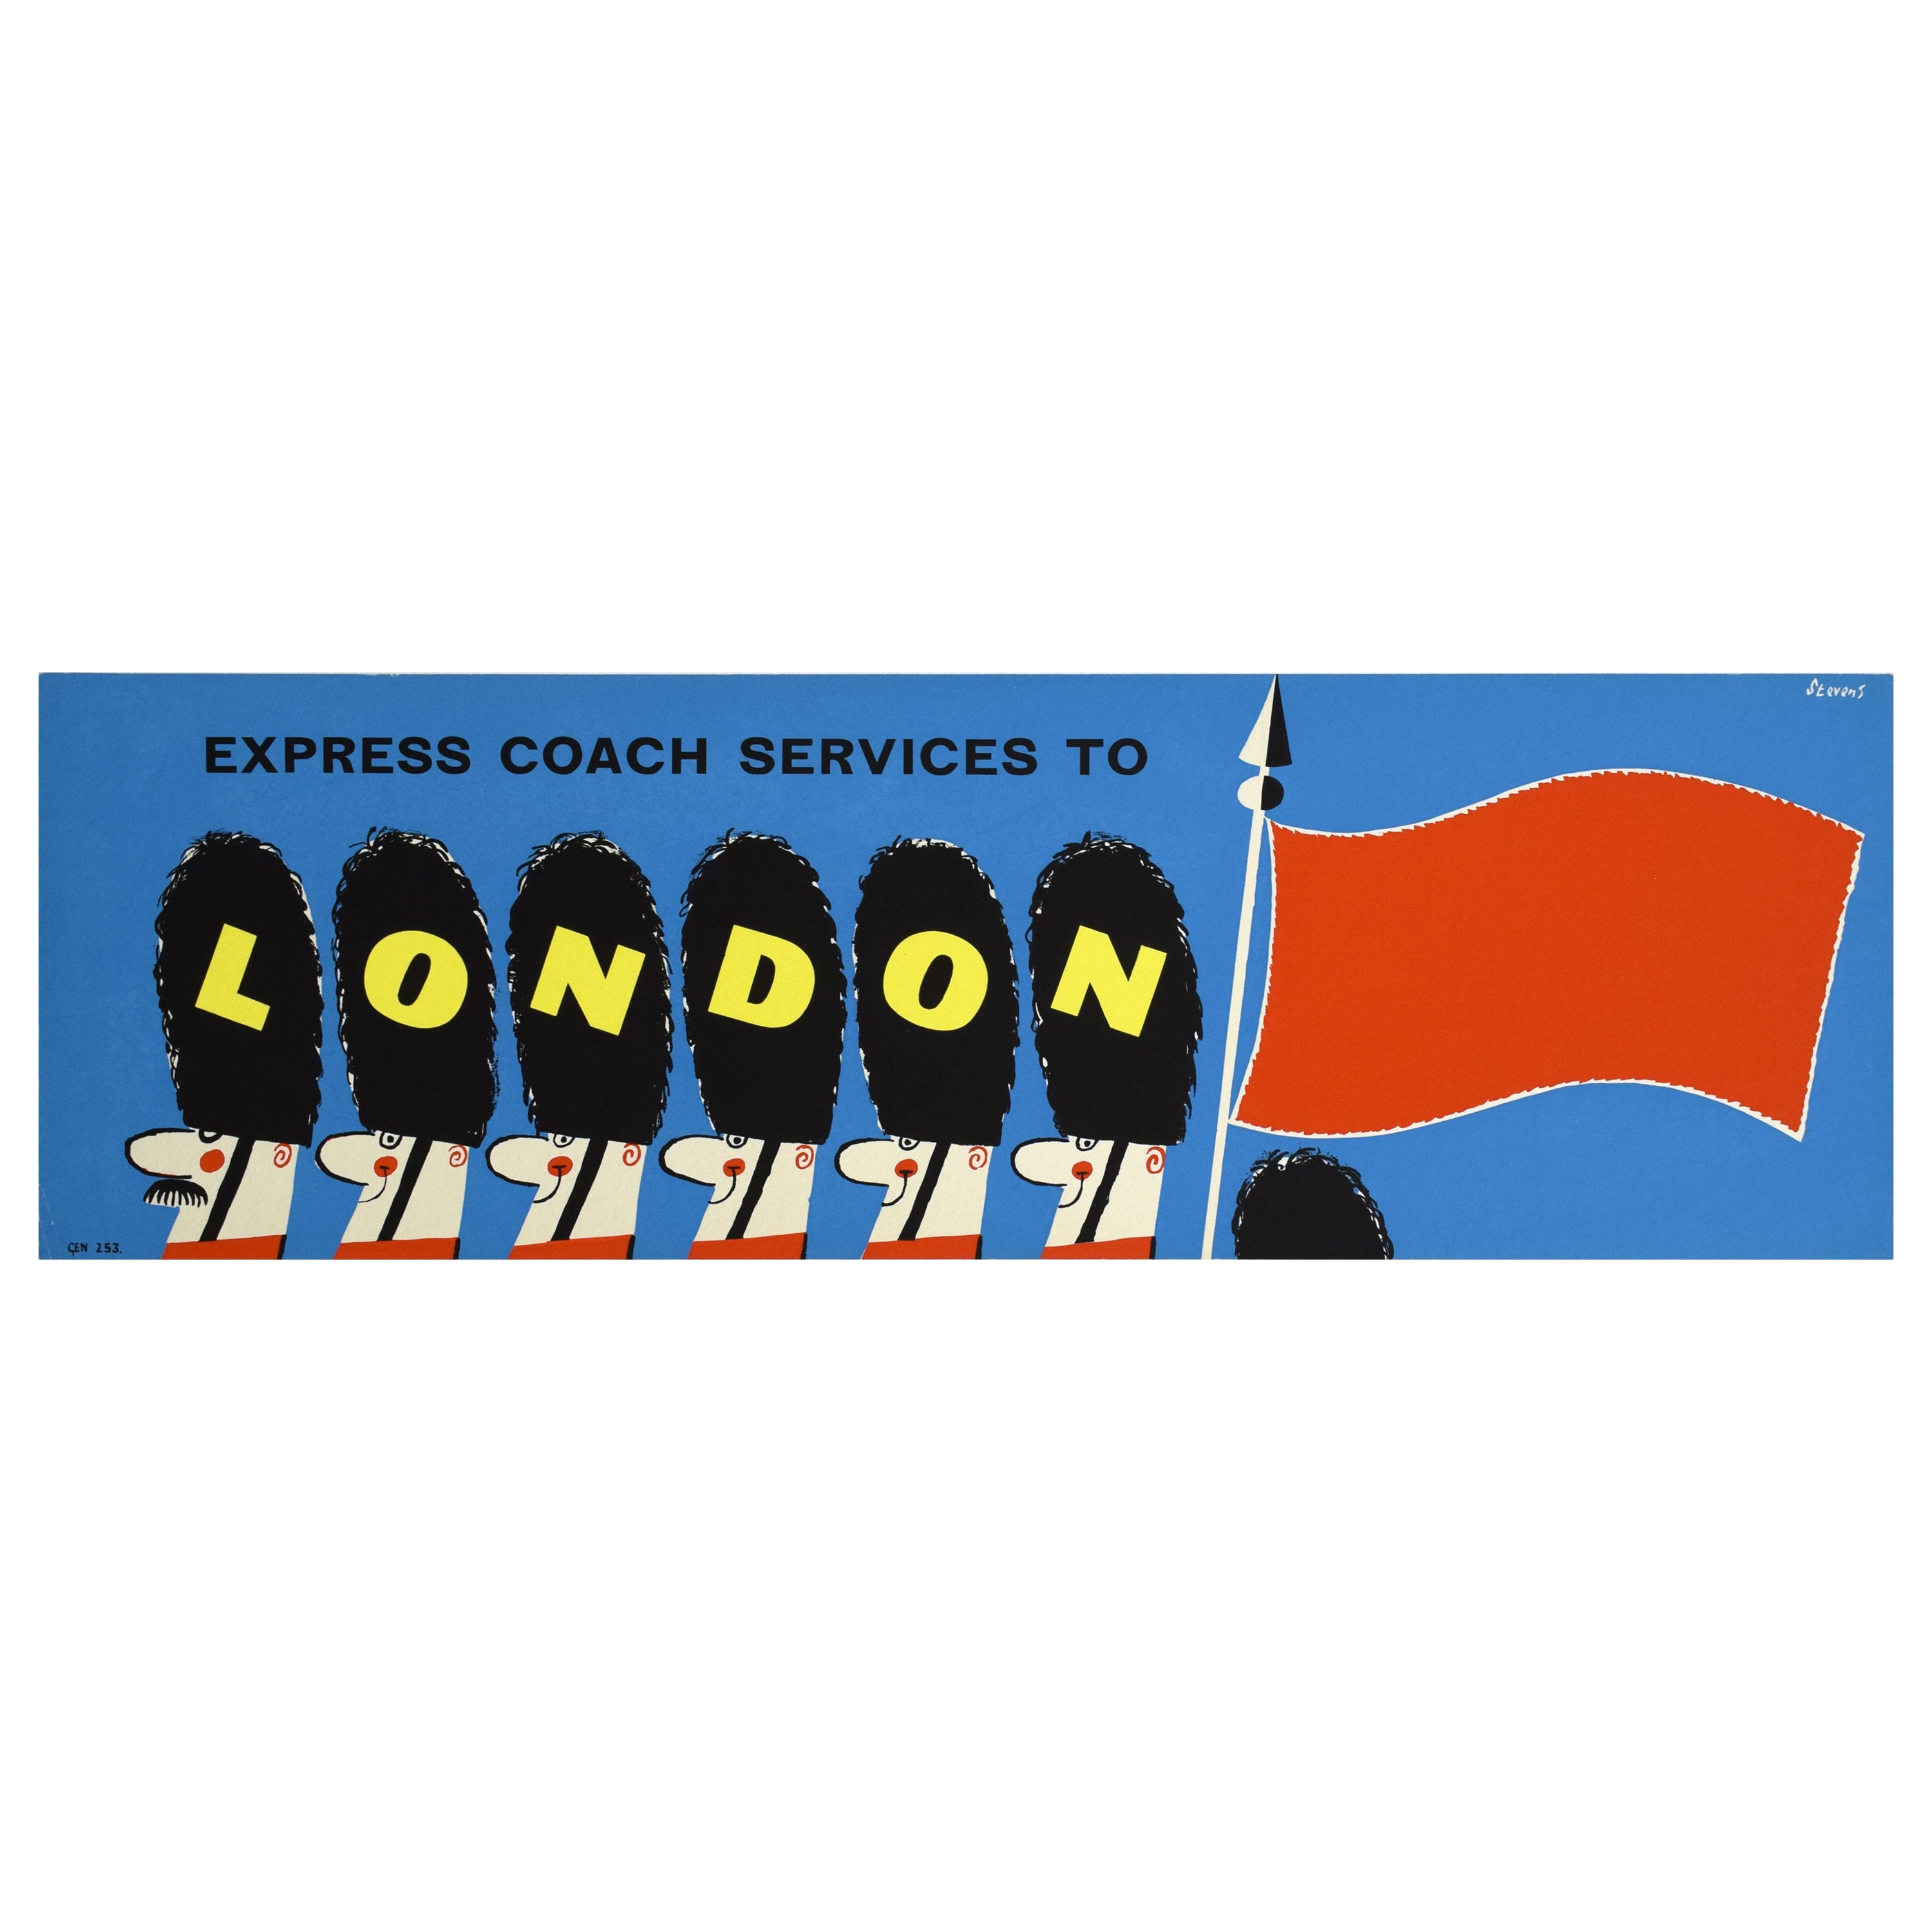 Londoner Reiseplakat aus den 1960er Jahren von Harry Stevens